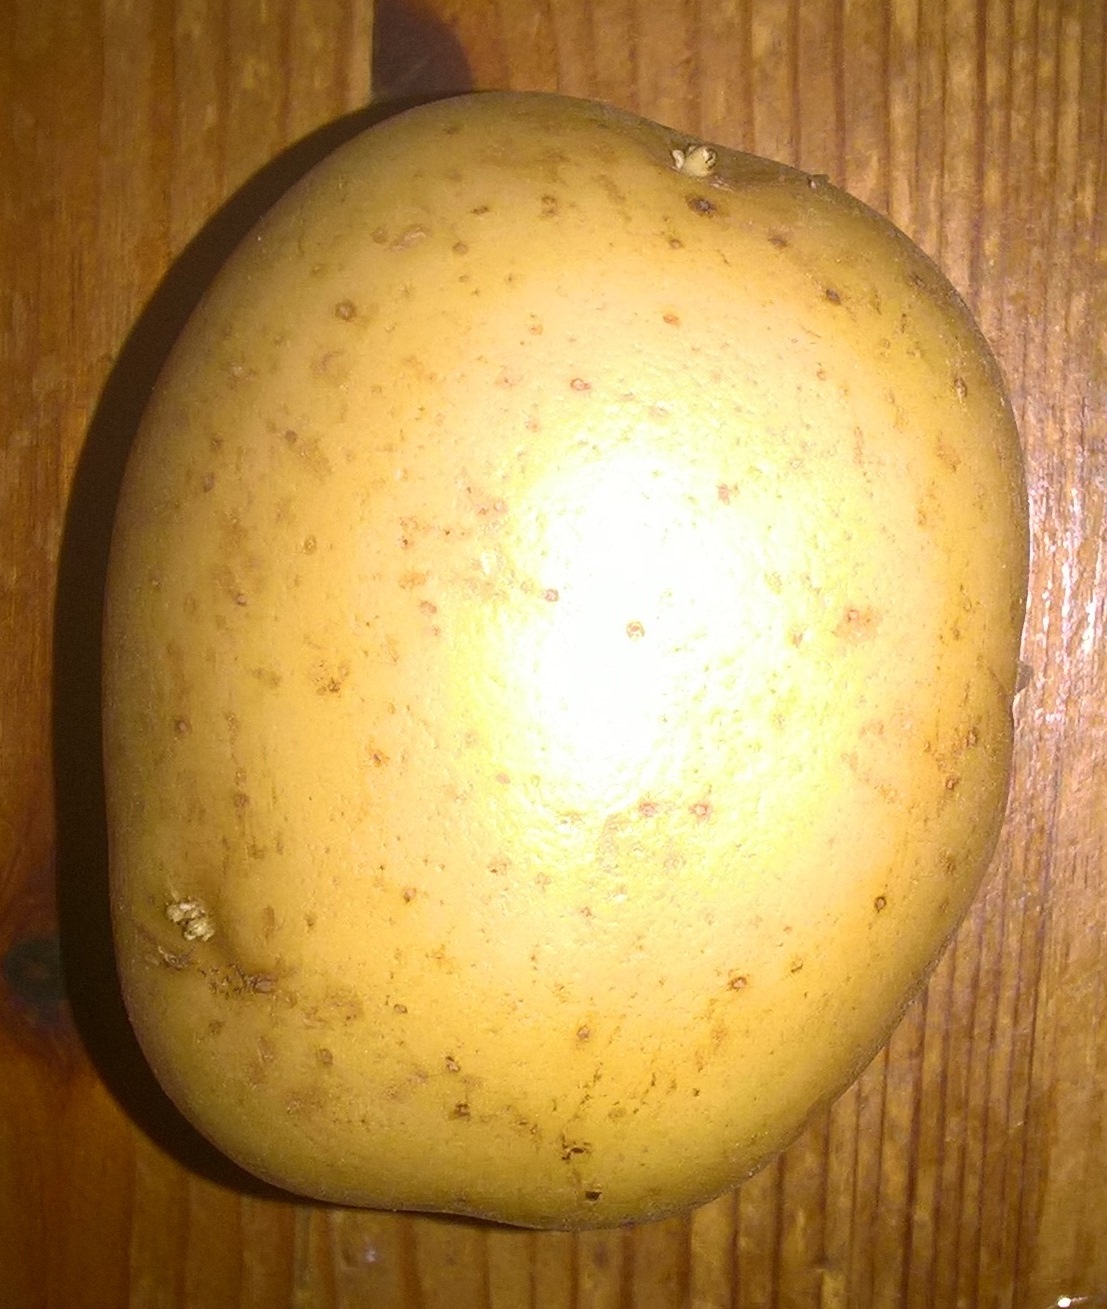 One small potato